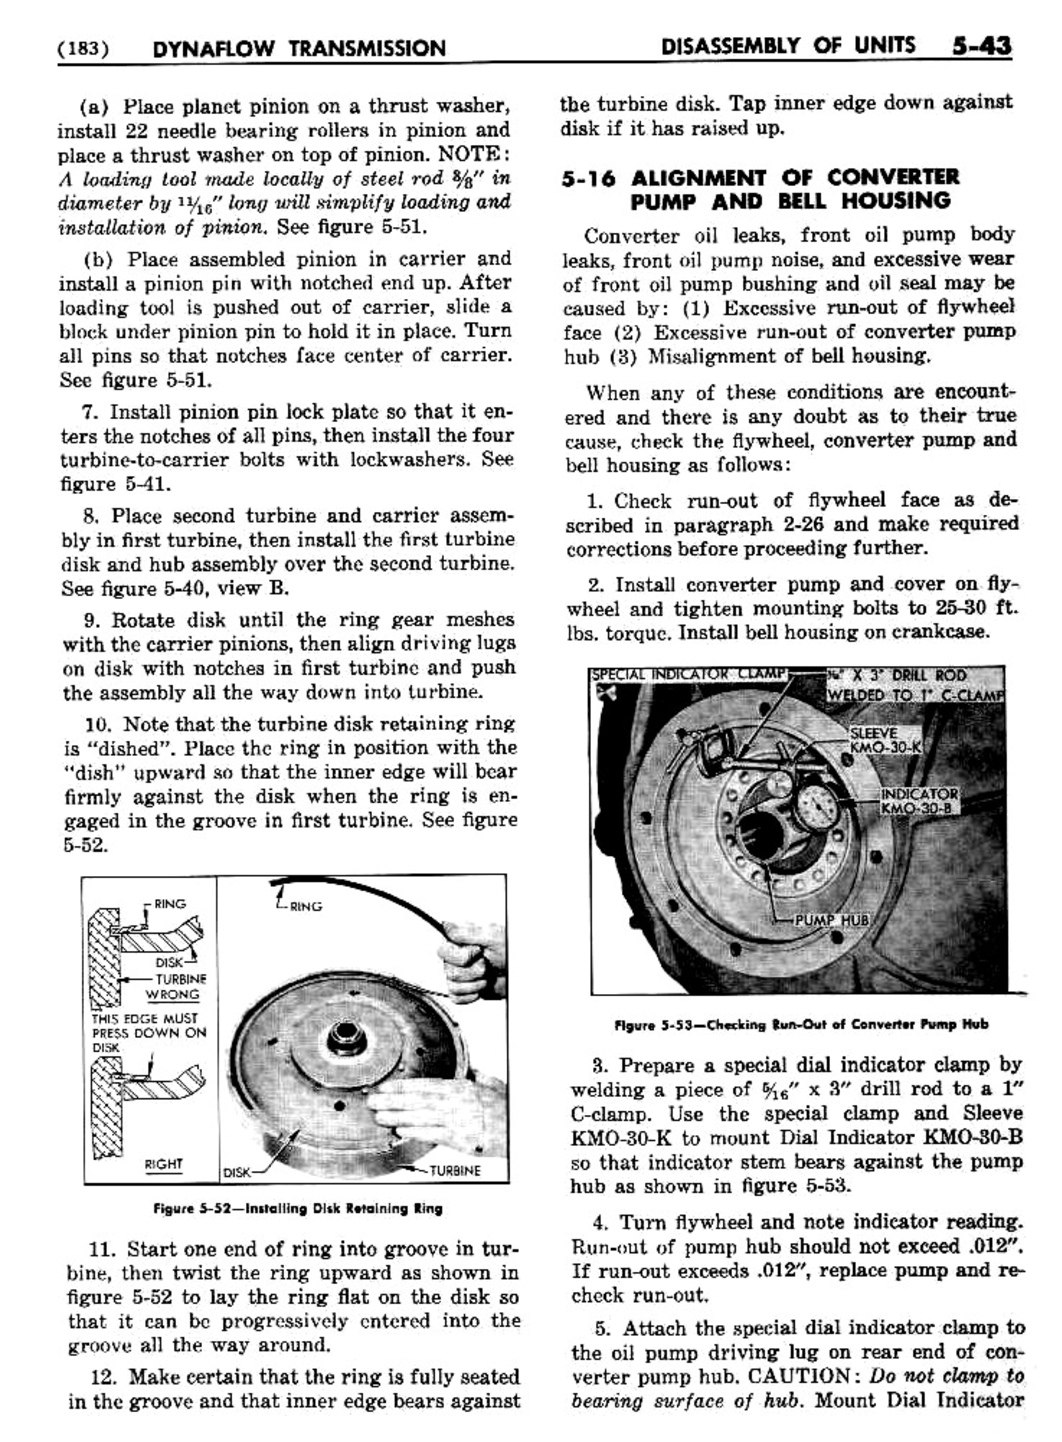 n_06 1955 Buick Shop Manual - Dynaflow-043-043.jpg